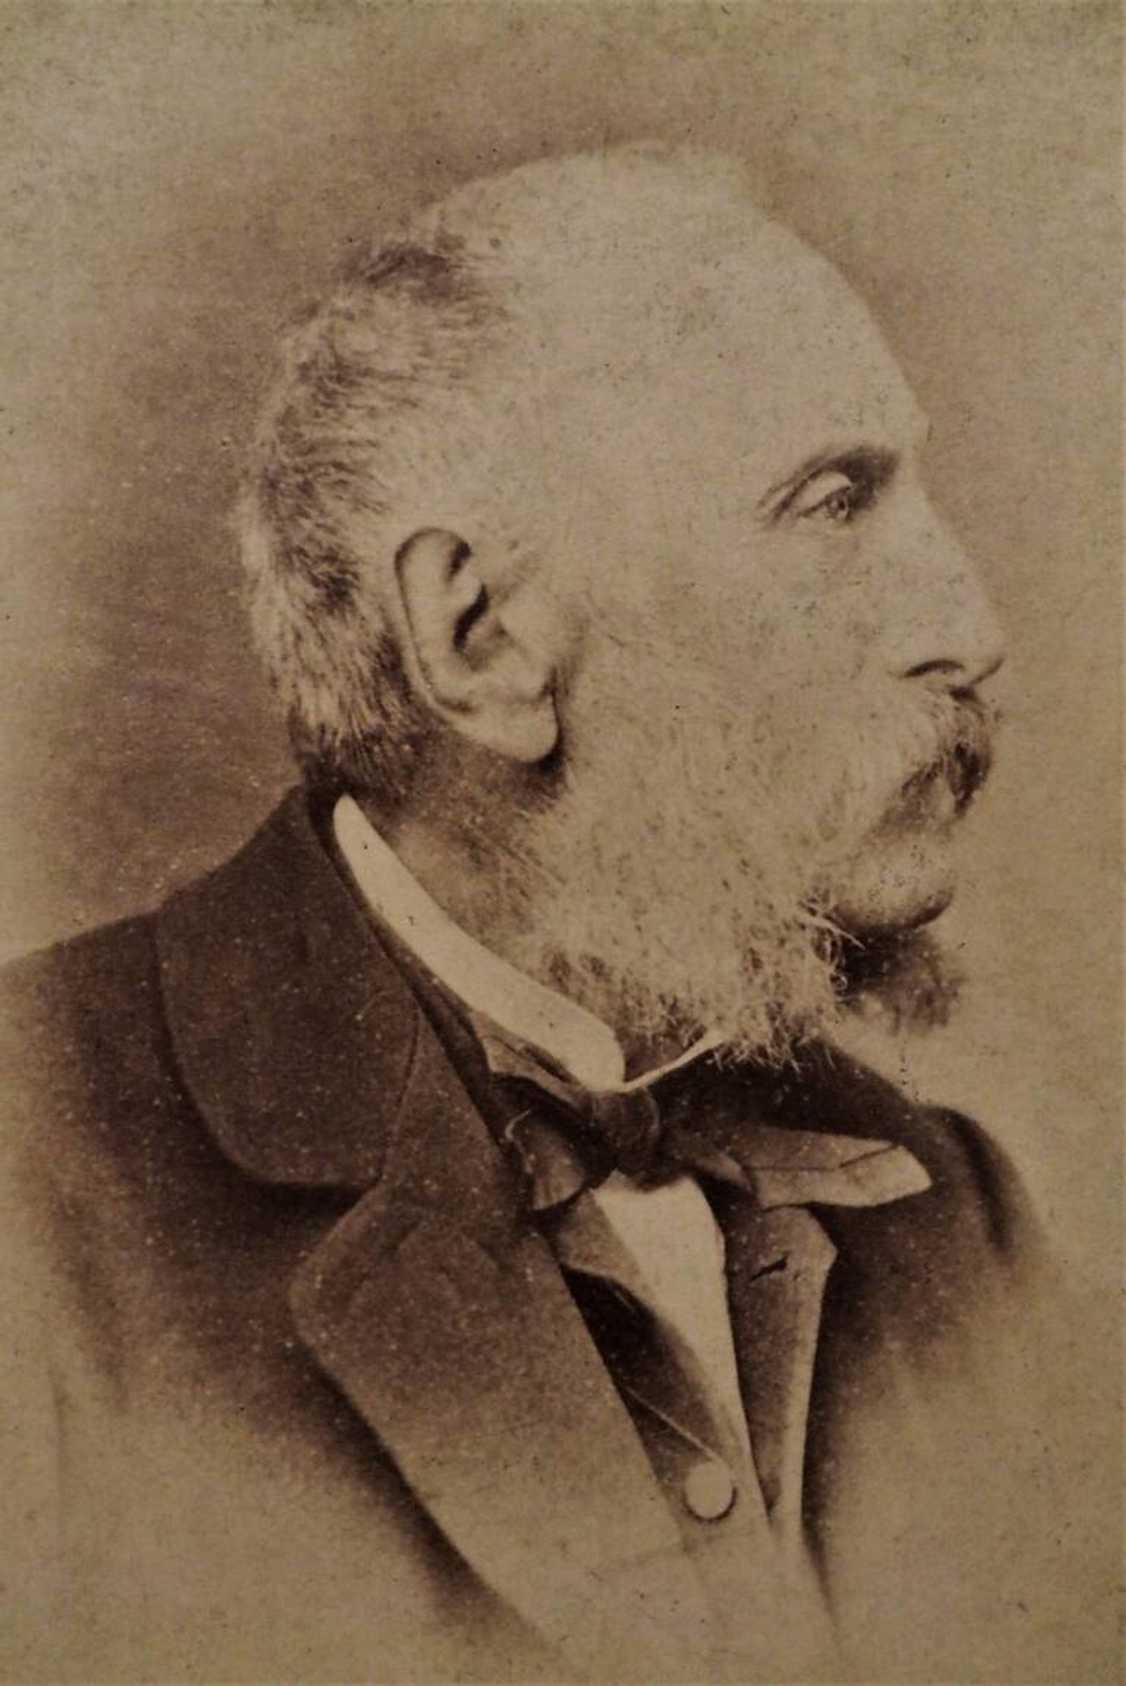 Adalbert Widmann (1804–1888)
